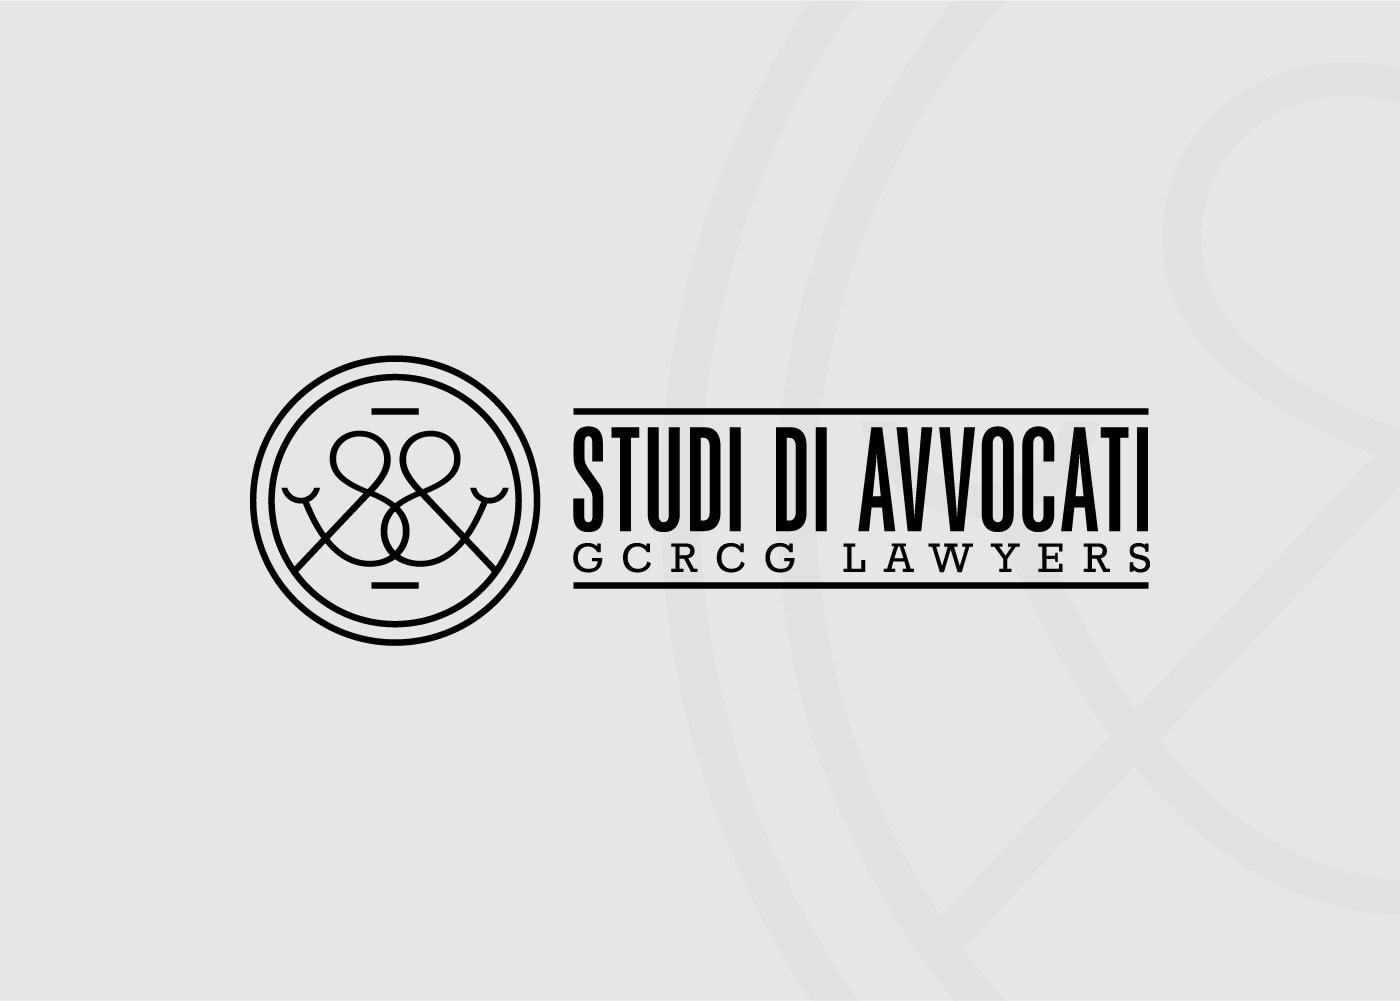 Studi_di_avvocati_02